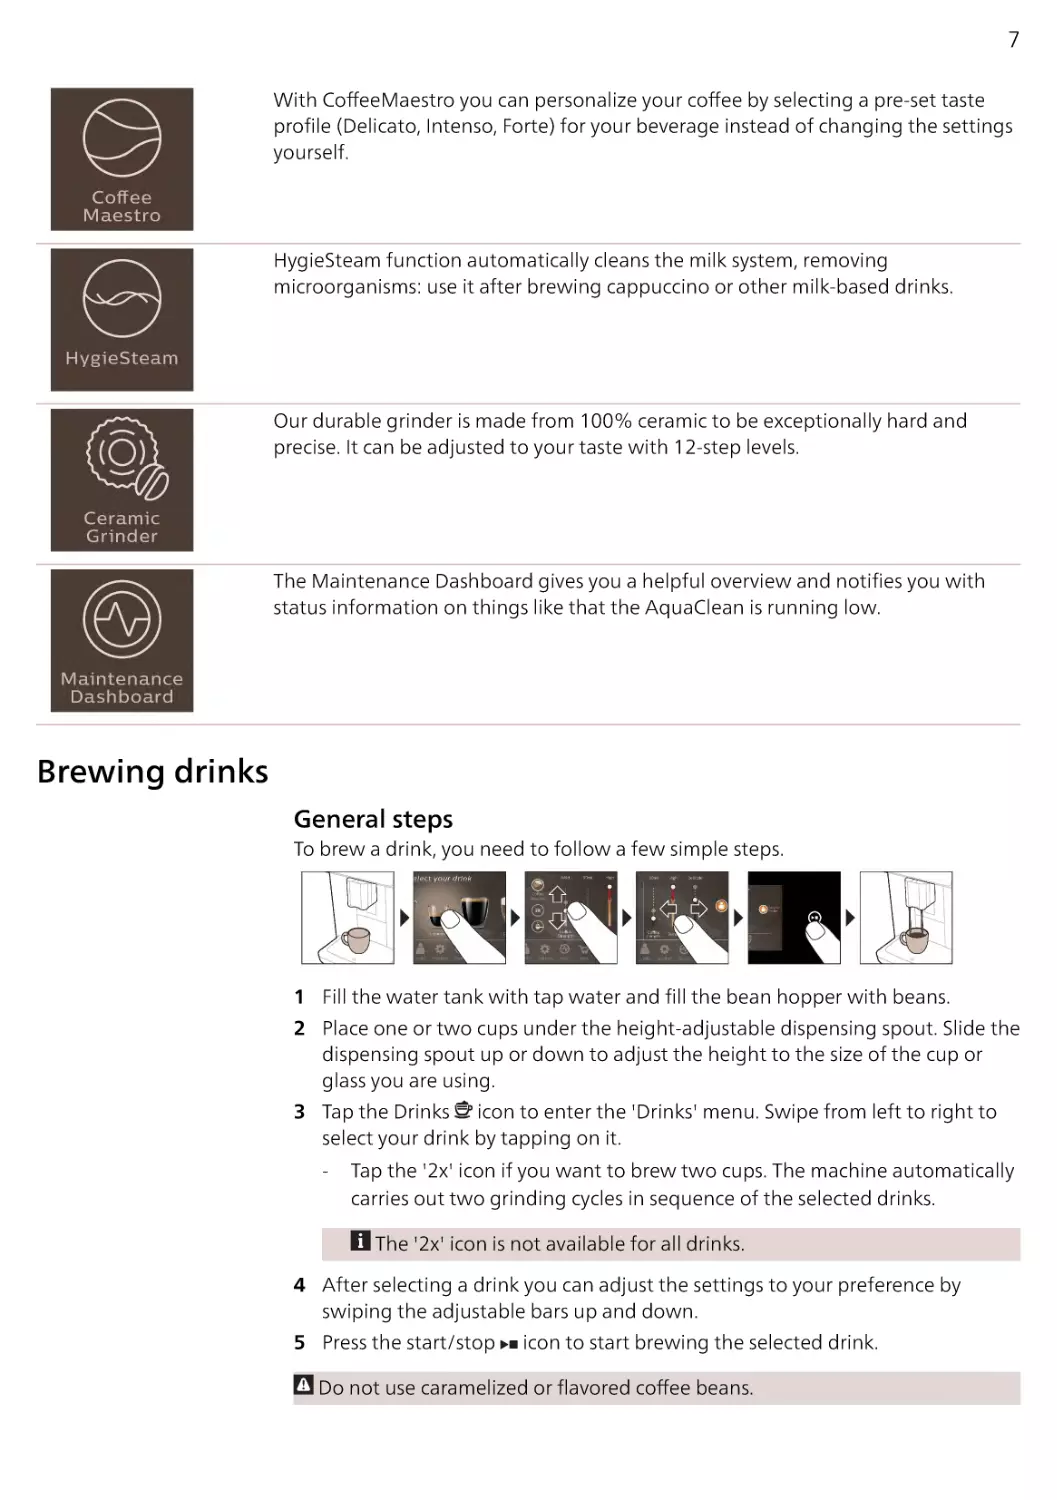 Brewing drinks
General steps